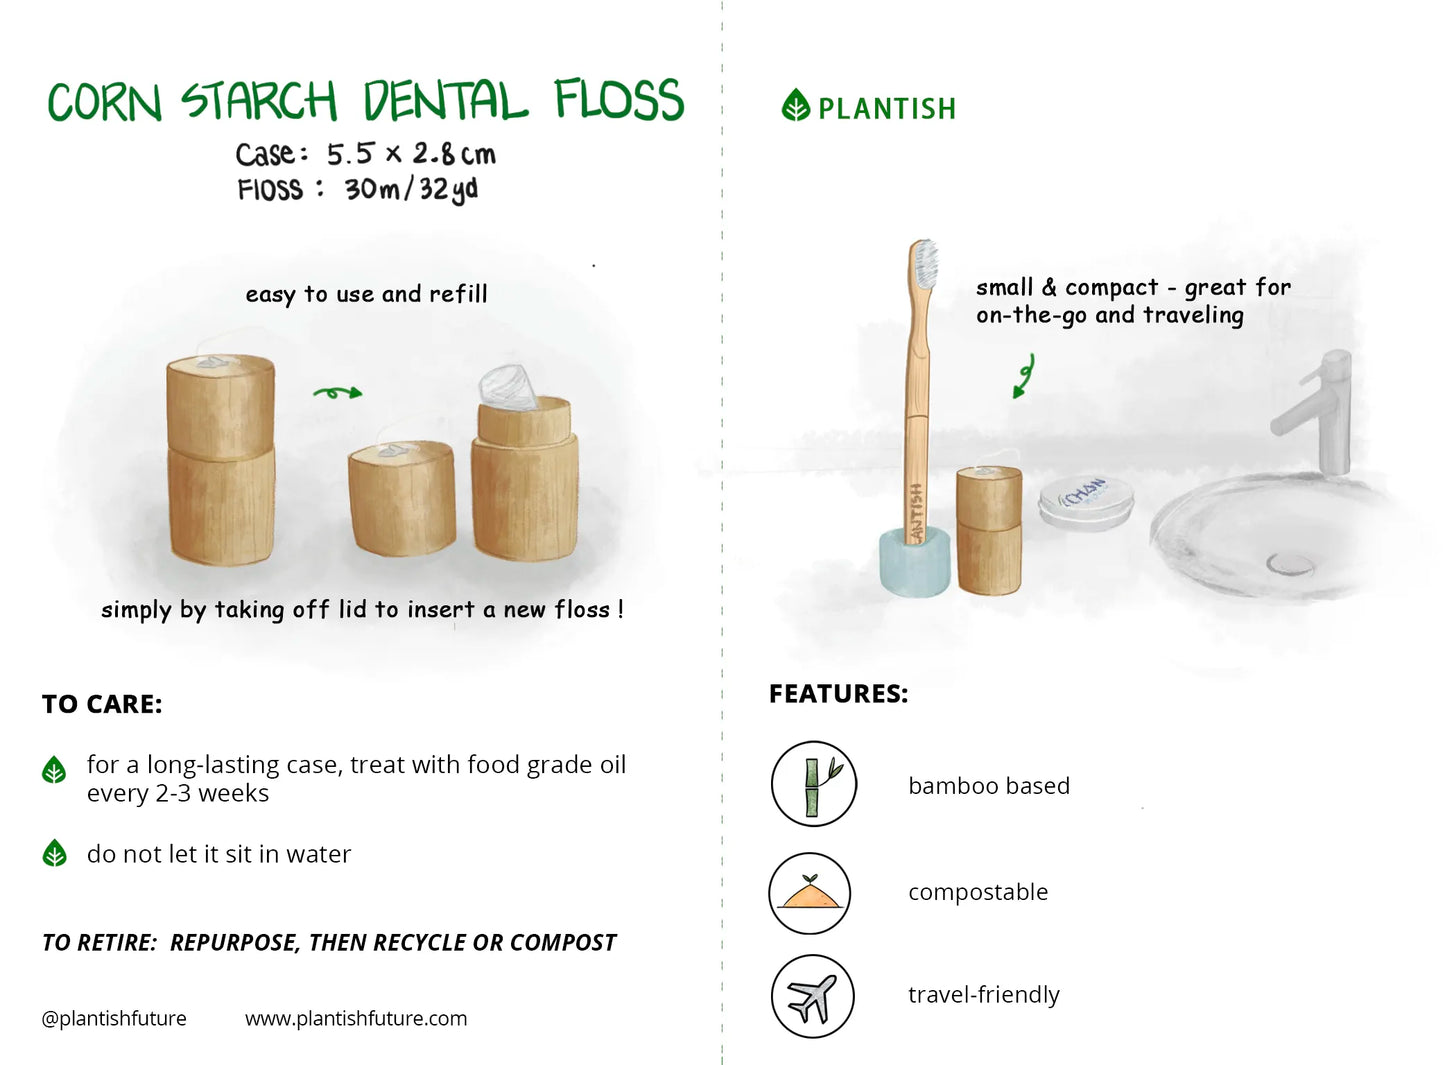 Corn Starch Dental Floss